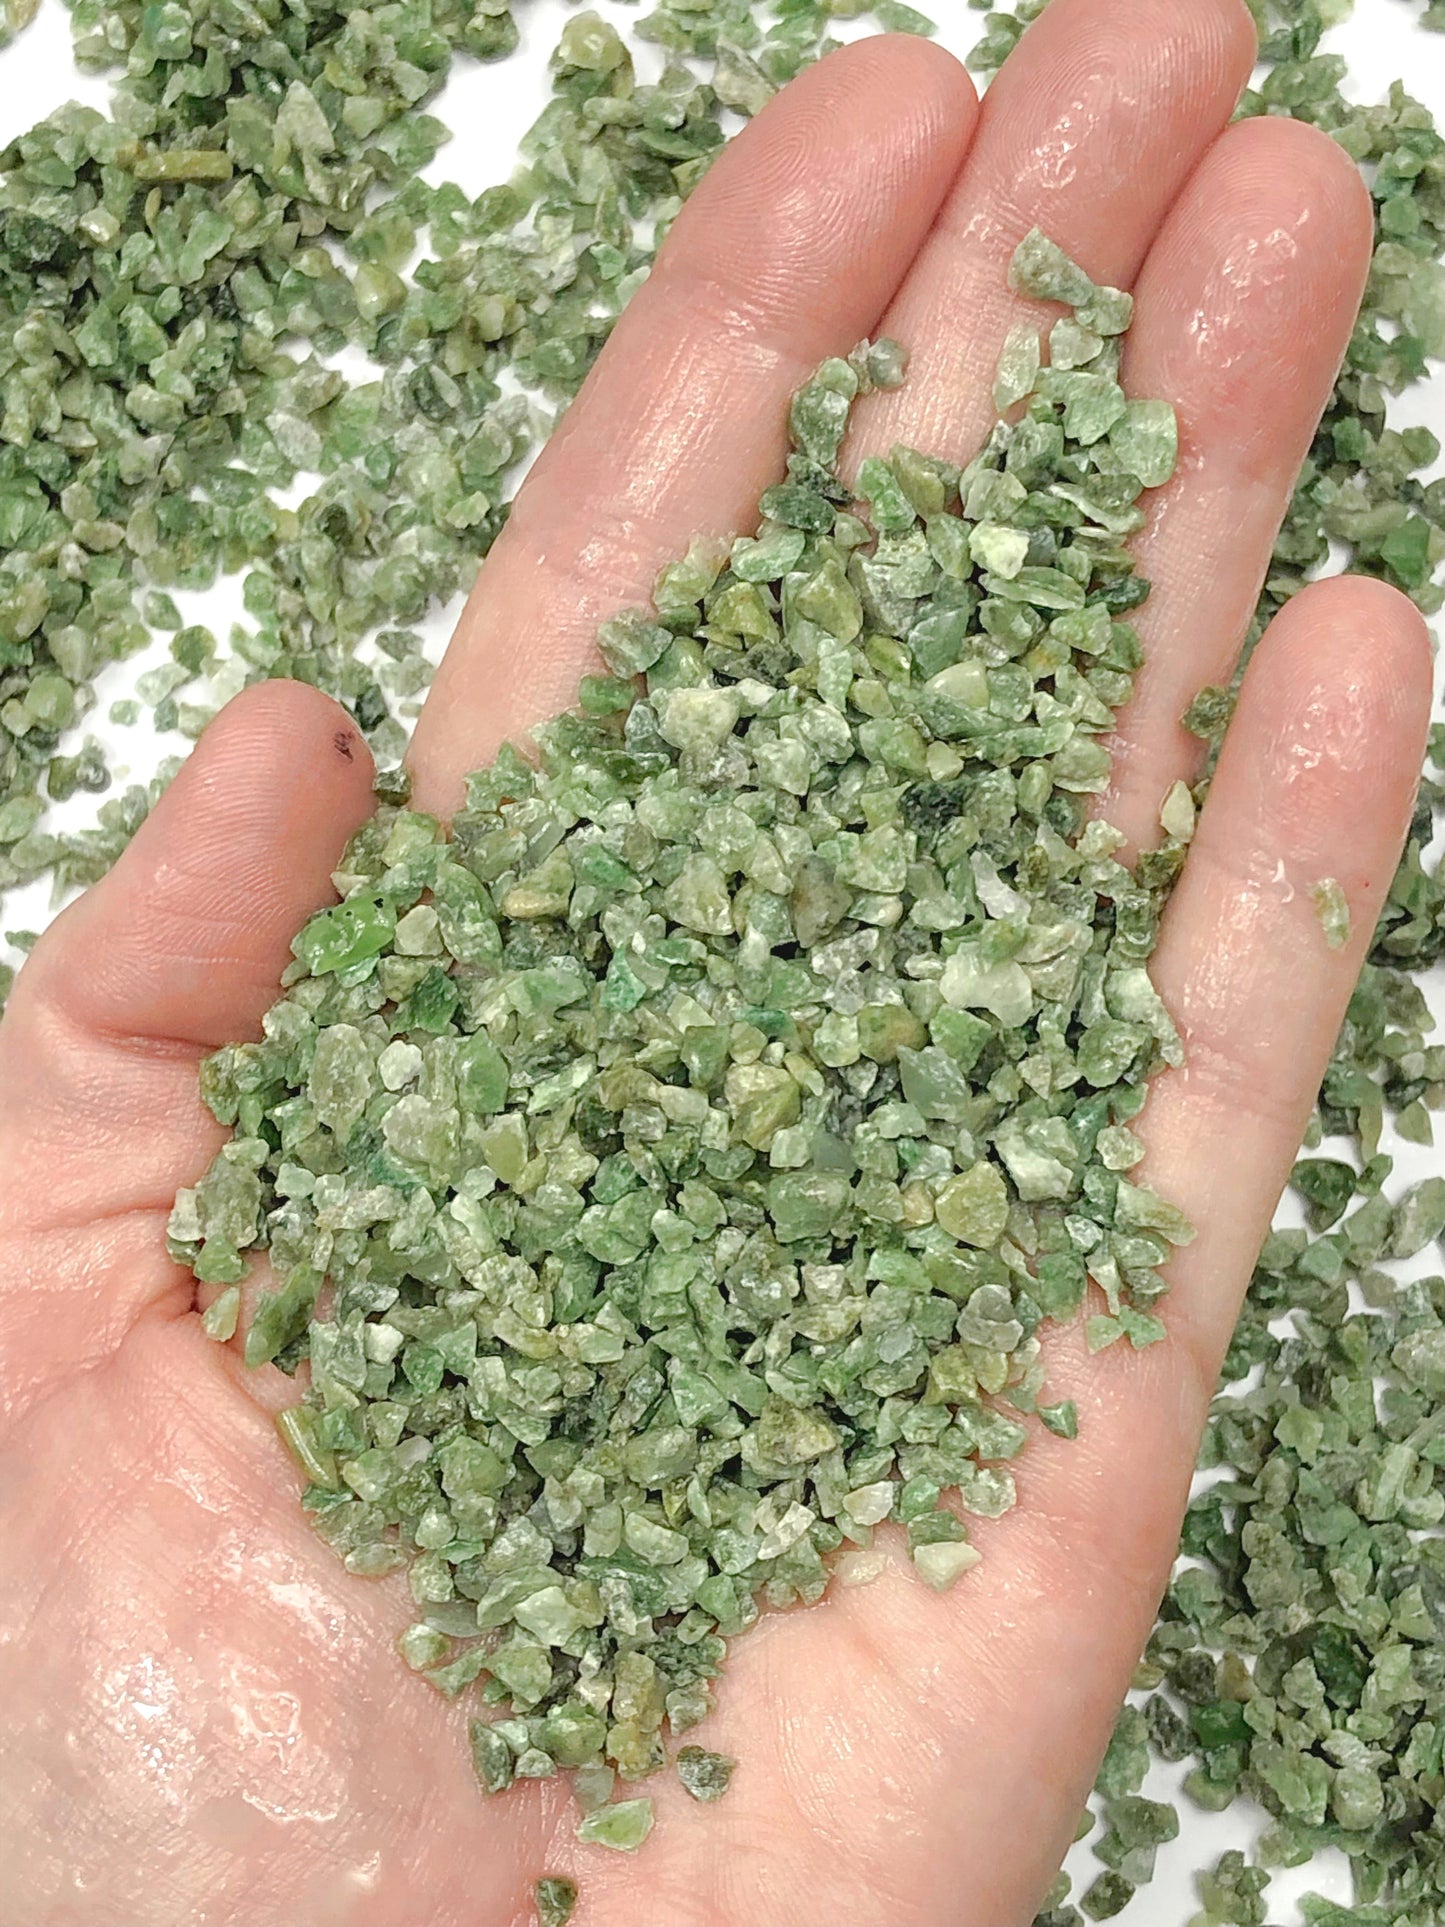 Crushed Green Vesuvianite (California Jade) from California, Coarse Crush, Gravel Size, 4mm - 2mm